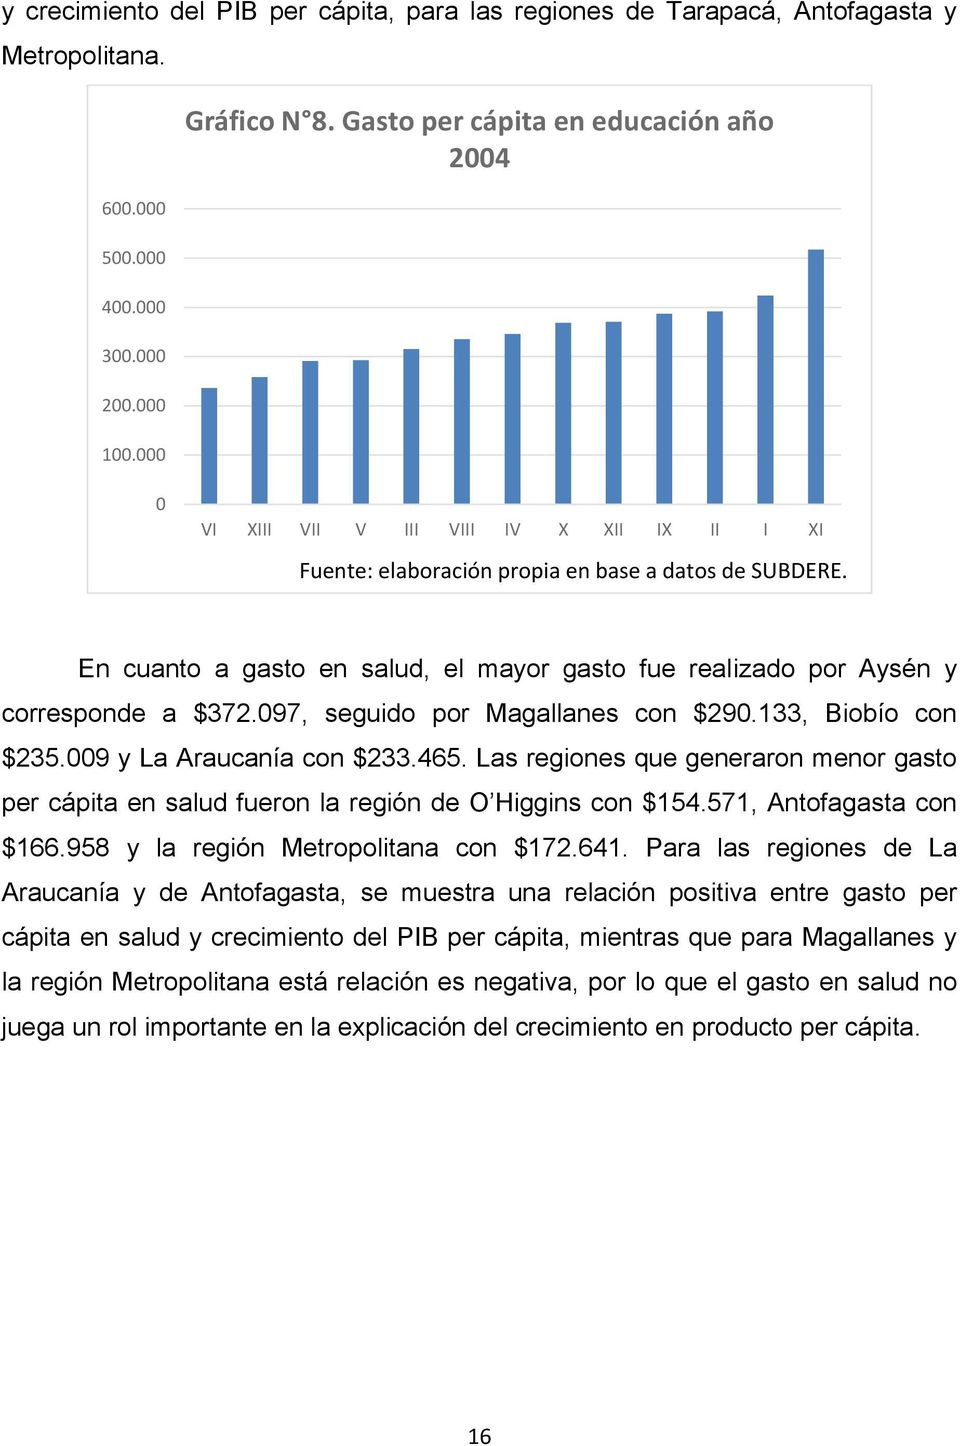 En cuanto a gasto en salud, el mayor gasto fue realizado por Aysén y corresponde a $372.097, seguido por Magallanes con $290.133, Biobío con $235.009 y La Araucanía con $233.465.